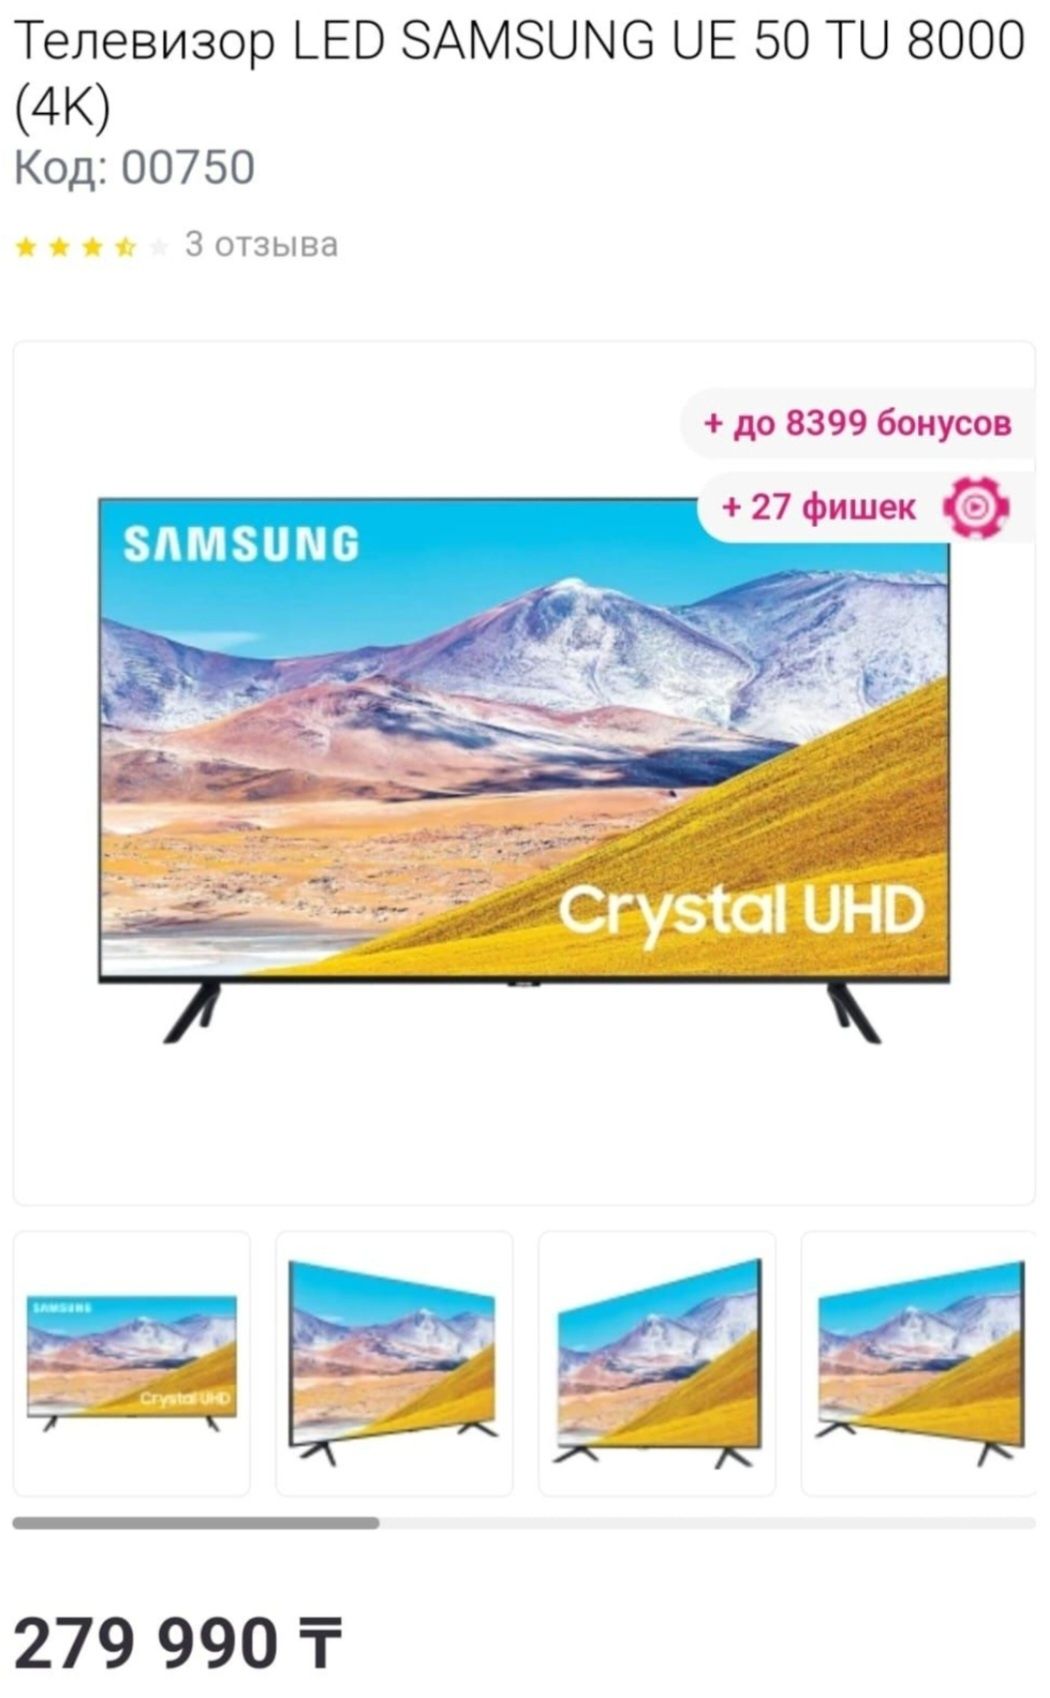 Большой 4К смарт телевизор Samsung 50 дюймов.